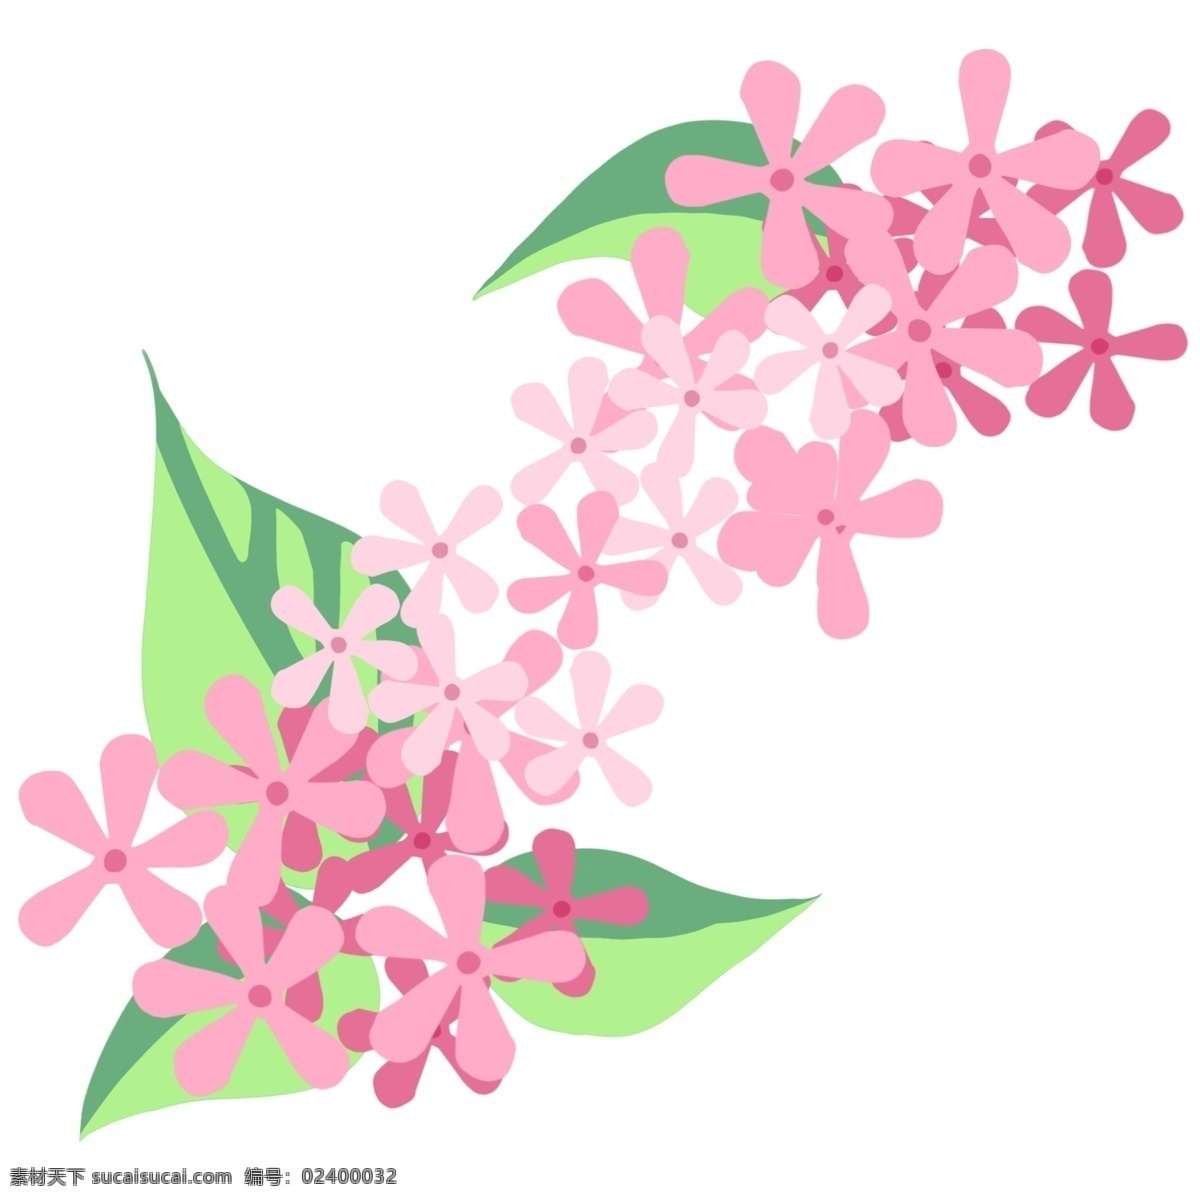 粉色 樱花 花朵 插画 粉色的樱花 卡通插画 植物插画 樱花插画 樱花花朵 装饰樱花 绽放的樱花